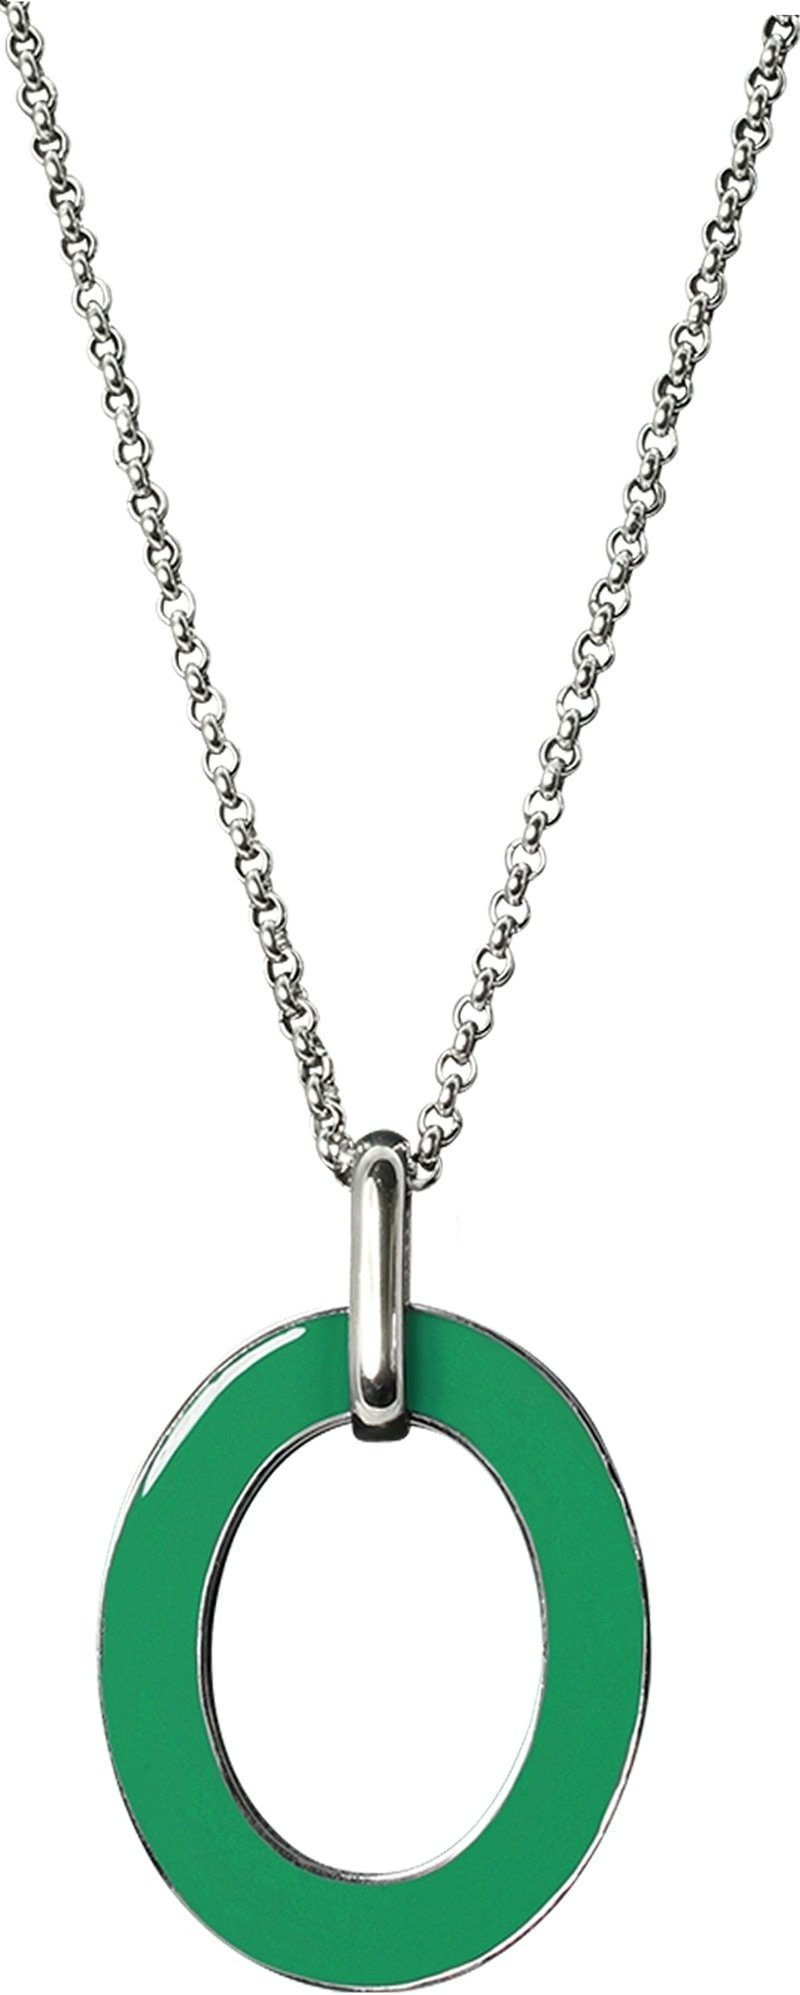 Amello Edelstahlkette Amello Oval Halskette grün weiß (Halskette), Damen-Halskette (Oval) ca. 80cm + 4cm Verlängerung, Edelstahl (Stainle